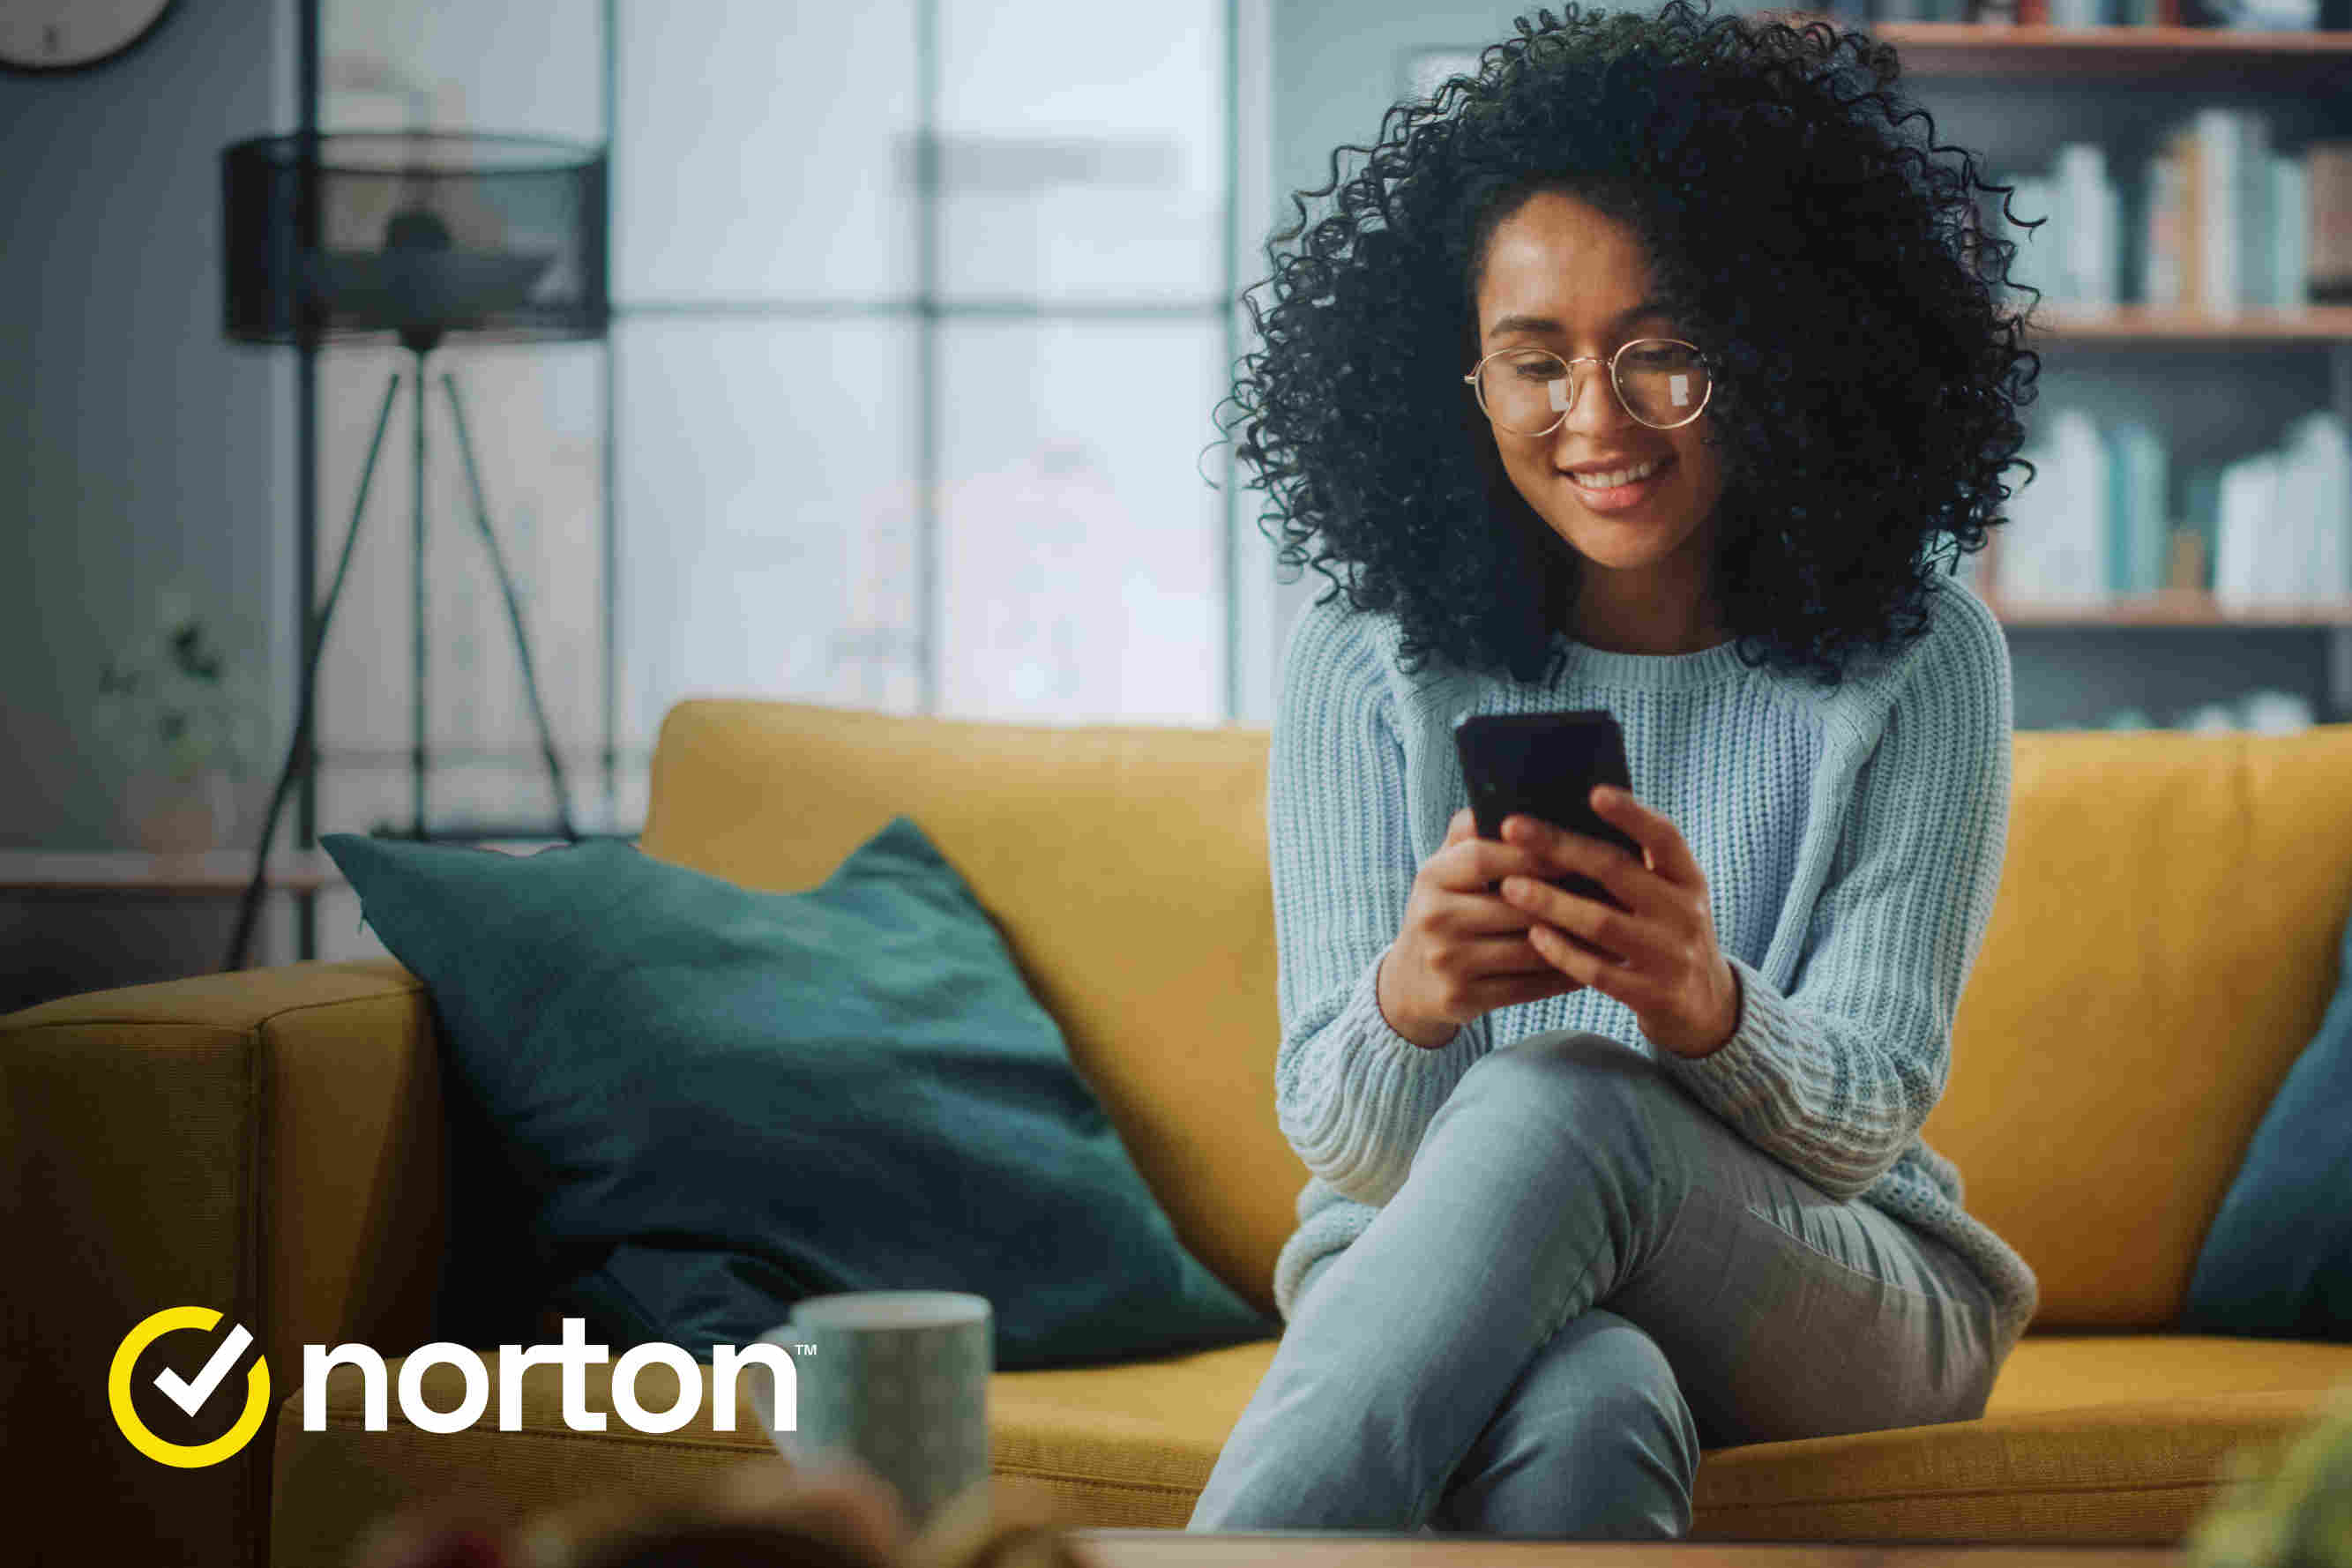 Henkilö katsoo puhelinta sohvalla istuen. Vasemmalla alanurkassa Norton-logo.